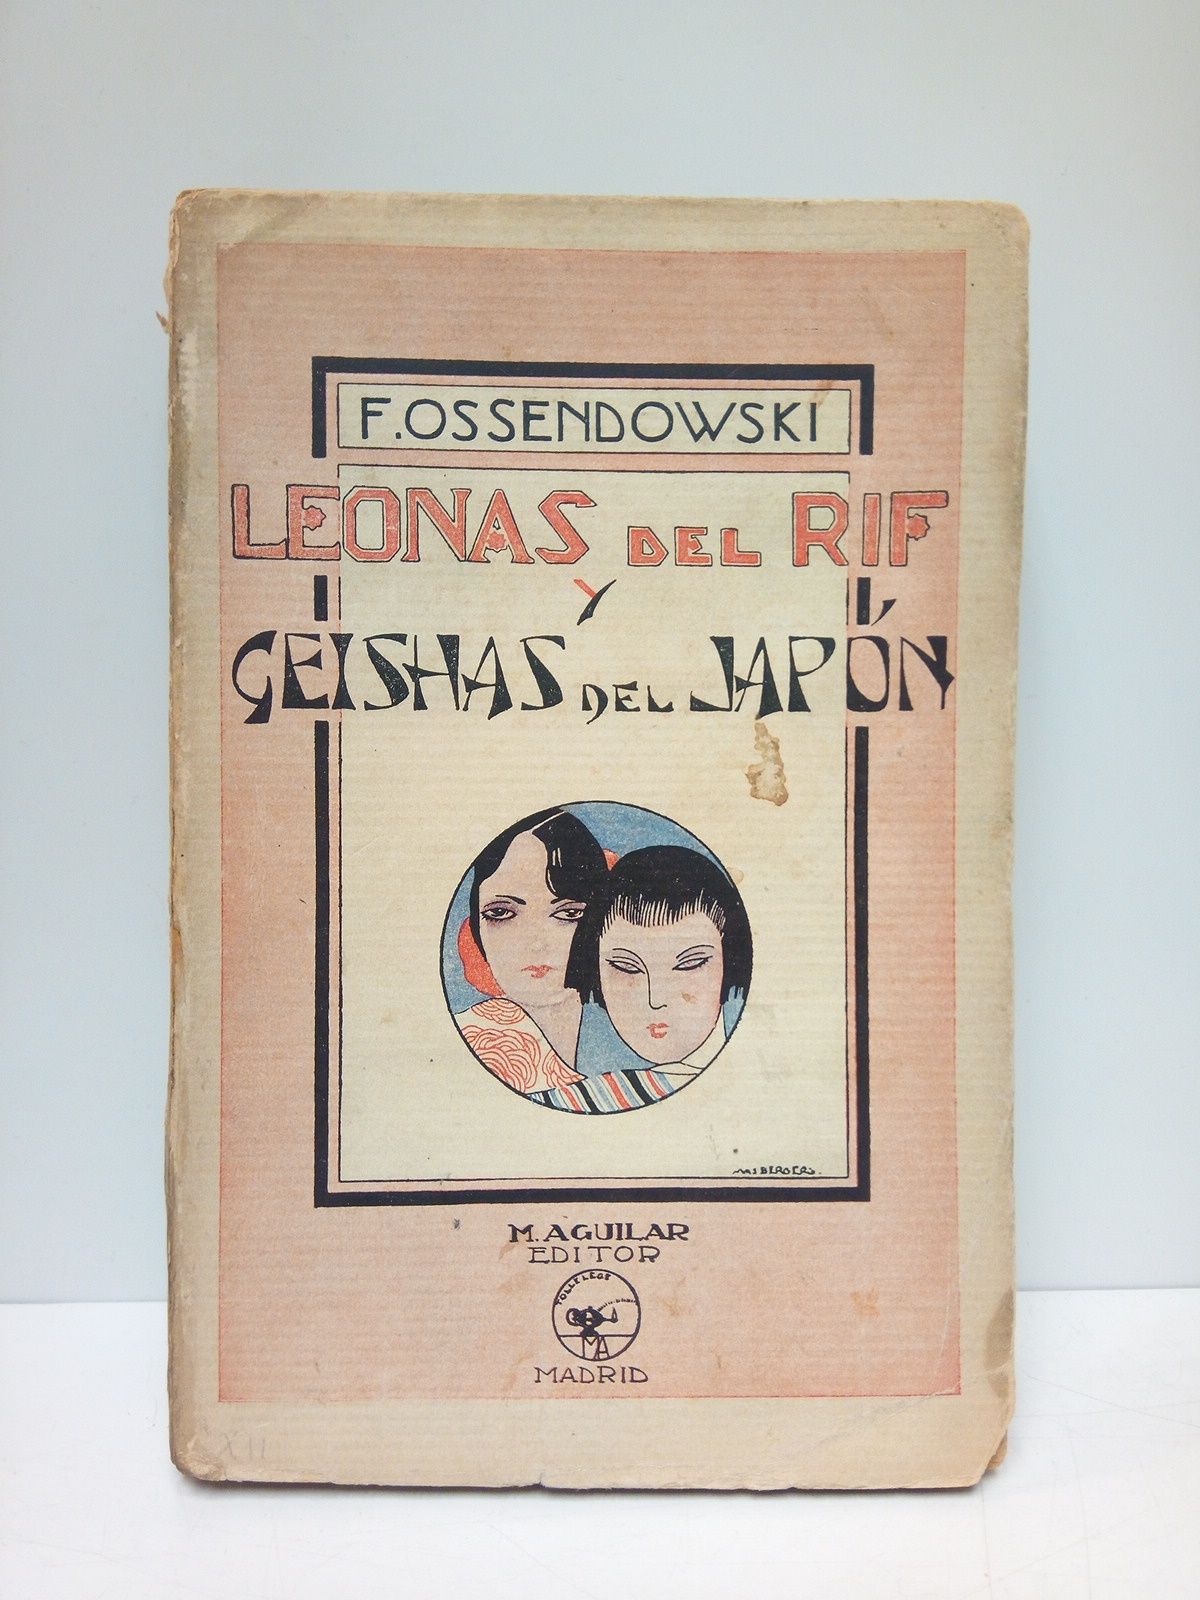 OSSENDOWSKI, F. - Leonas del Rif y geishas del Japn /  Versin castellana de R. Cansinos-Assens